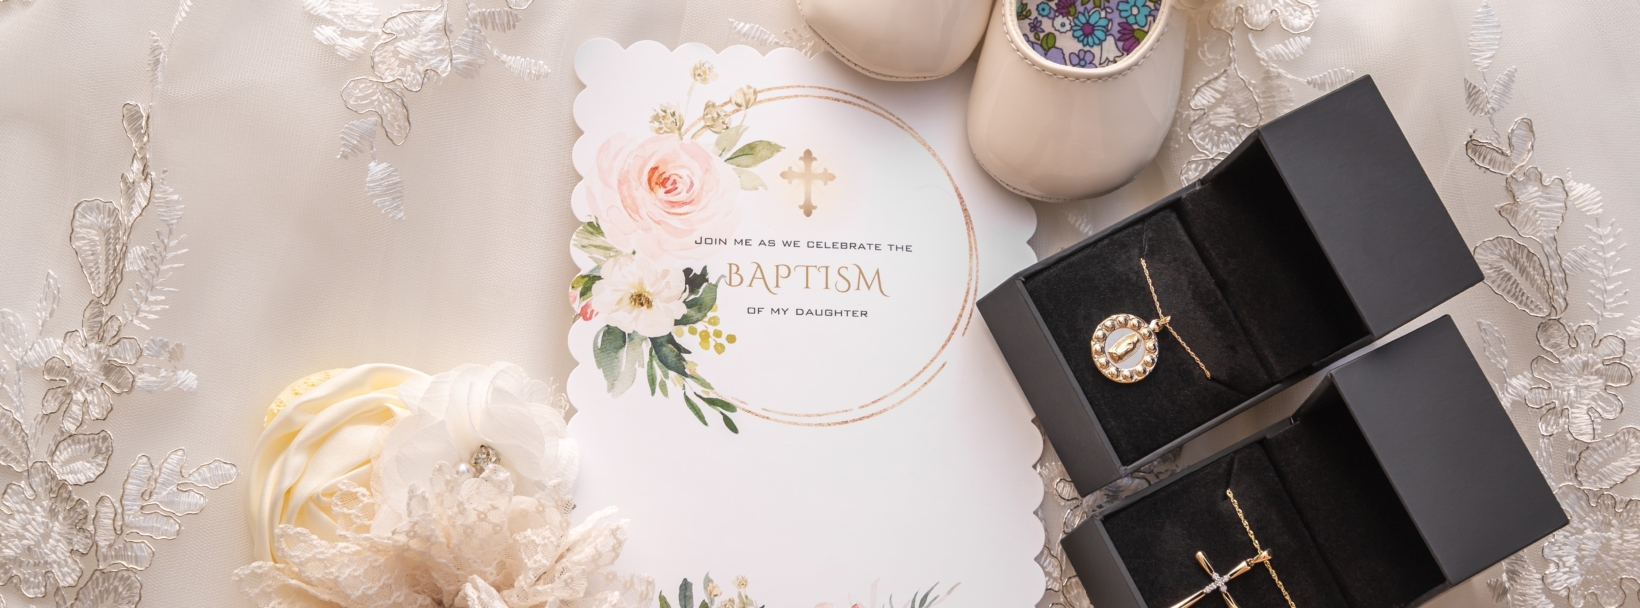 Najpiękniejsze zaproszenia na chrzest. Jak powiadomić bliskich o tej wyjątkowej uroczystości? 120574